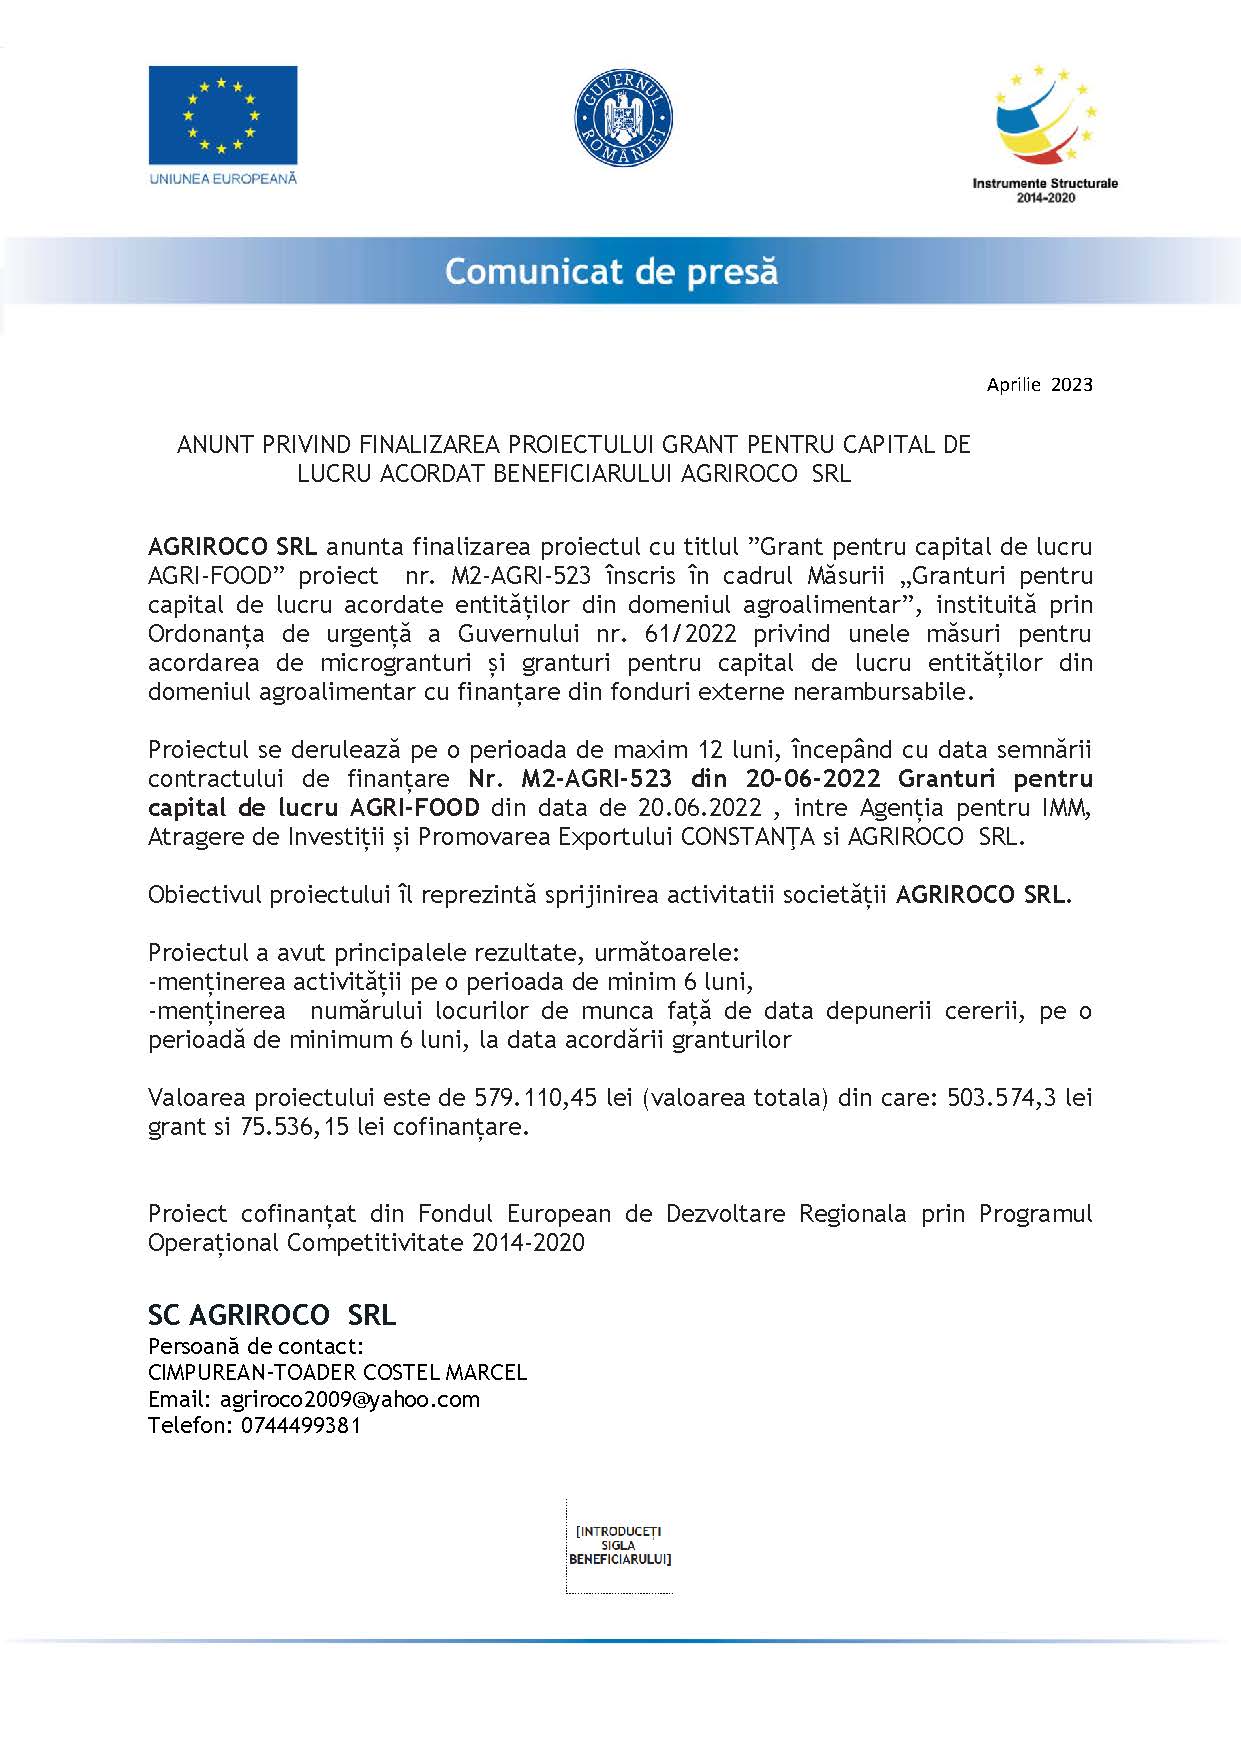 Comunicat de presă: ANUNT PRIVIND FINALIZAREA PROIECTULUI GRANT PENTRU CAPITAL DE LUCRU ACORDAT BENEFICIARULUI AGRIROCO SRL